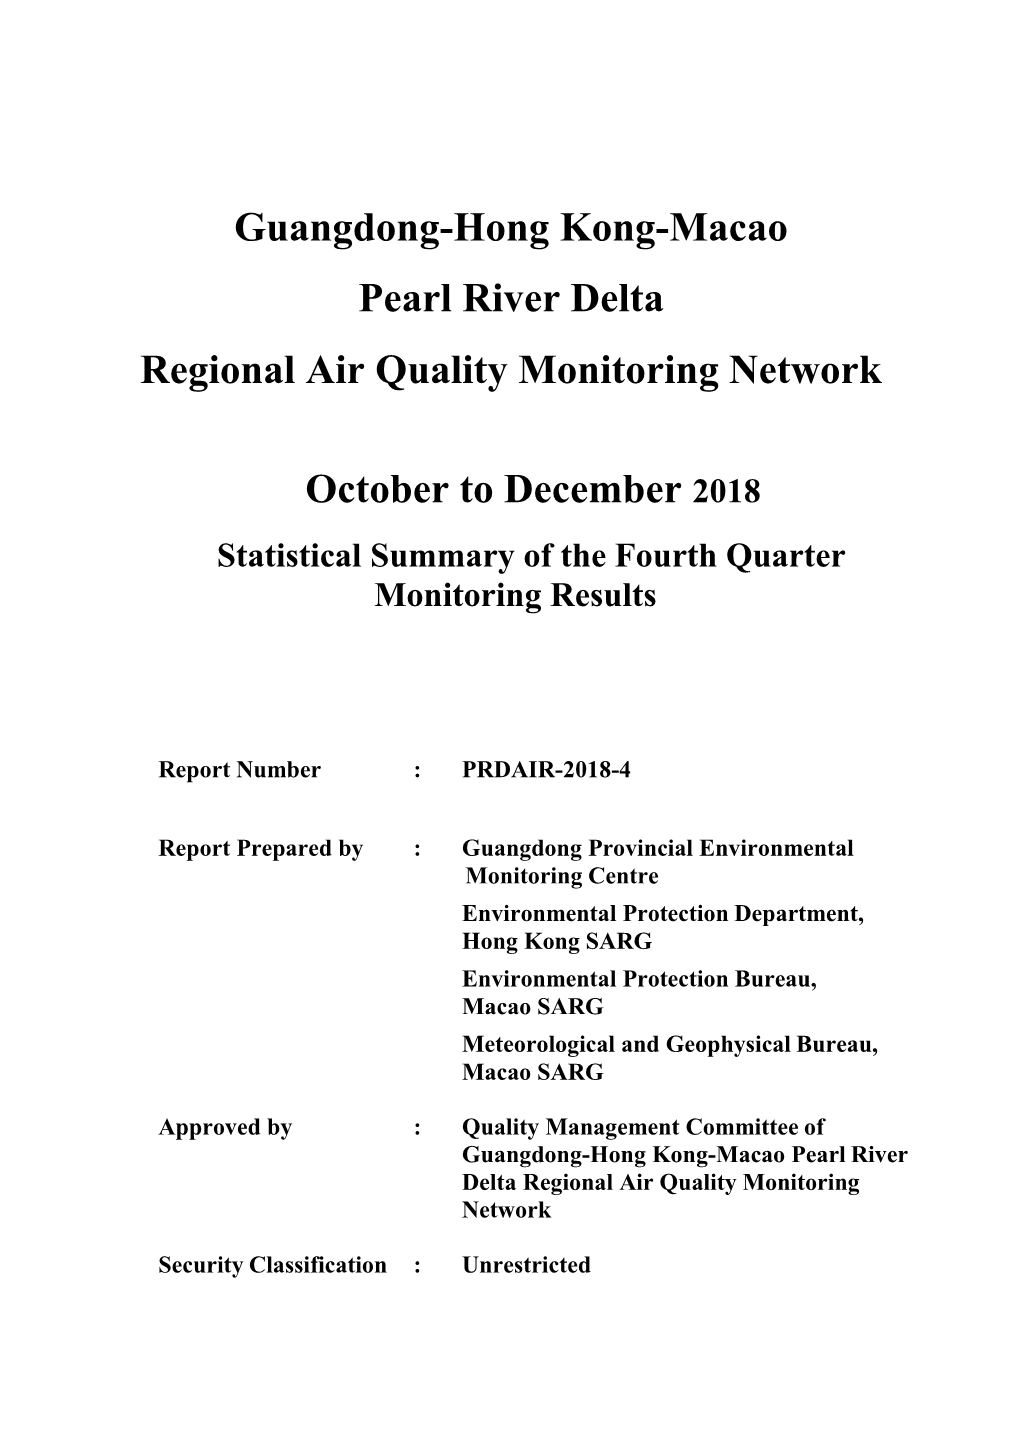 Guangdong-Hong Kong-Macao Pearl River Delta Regional Air Quality Monitoring Network